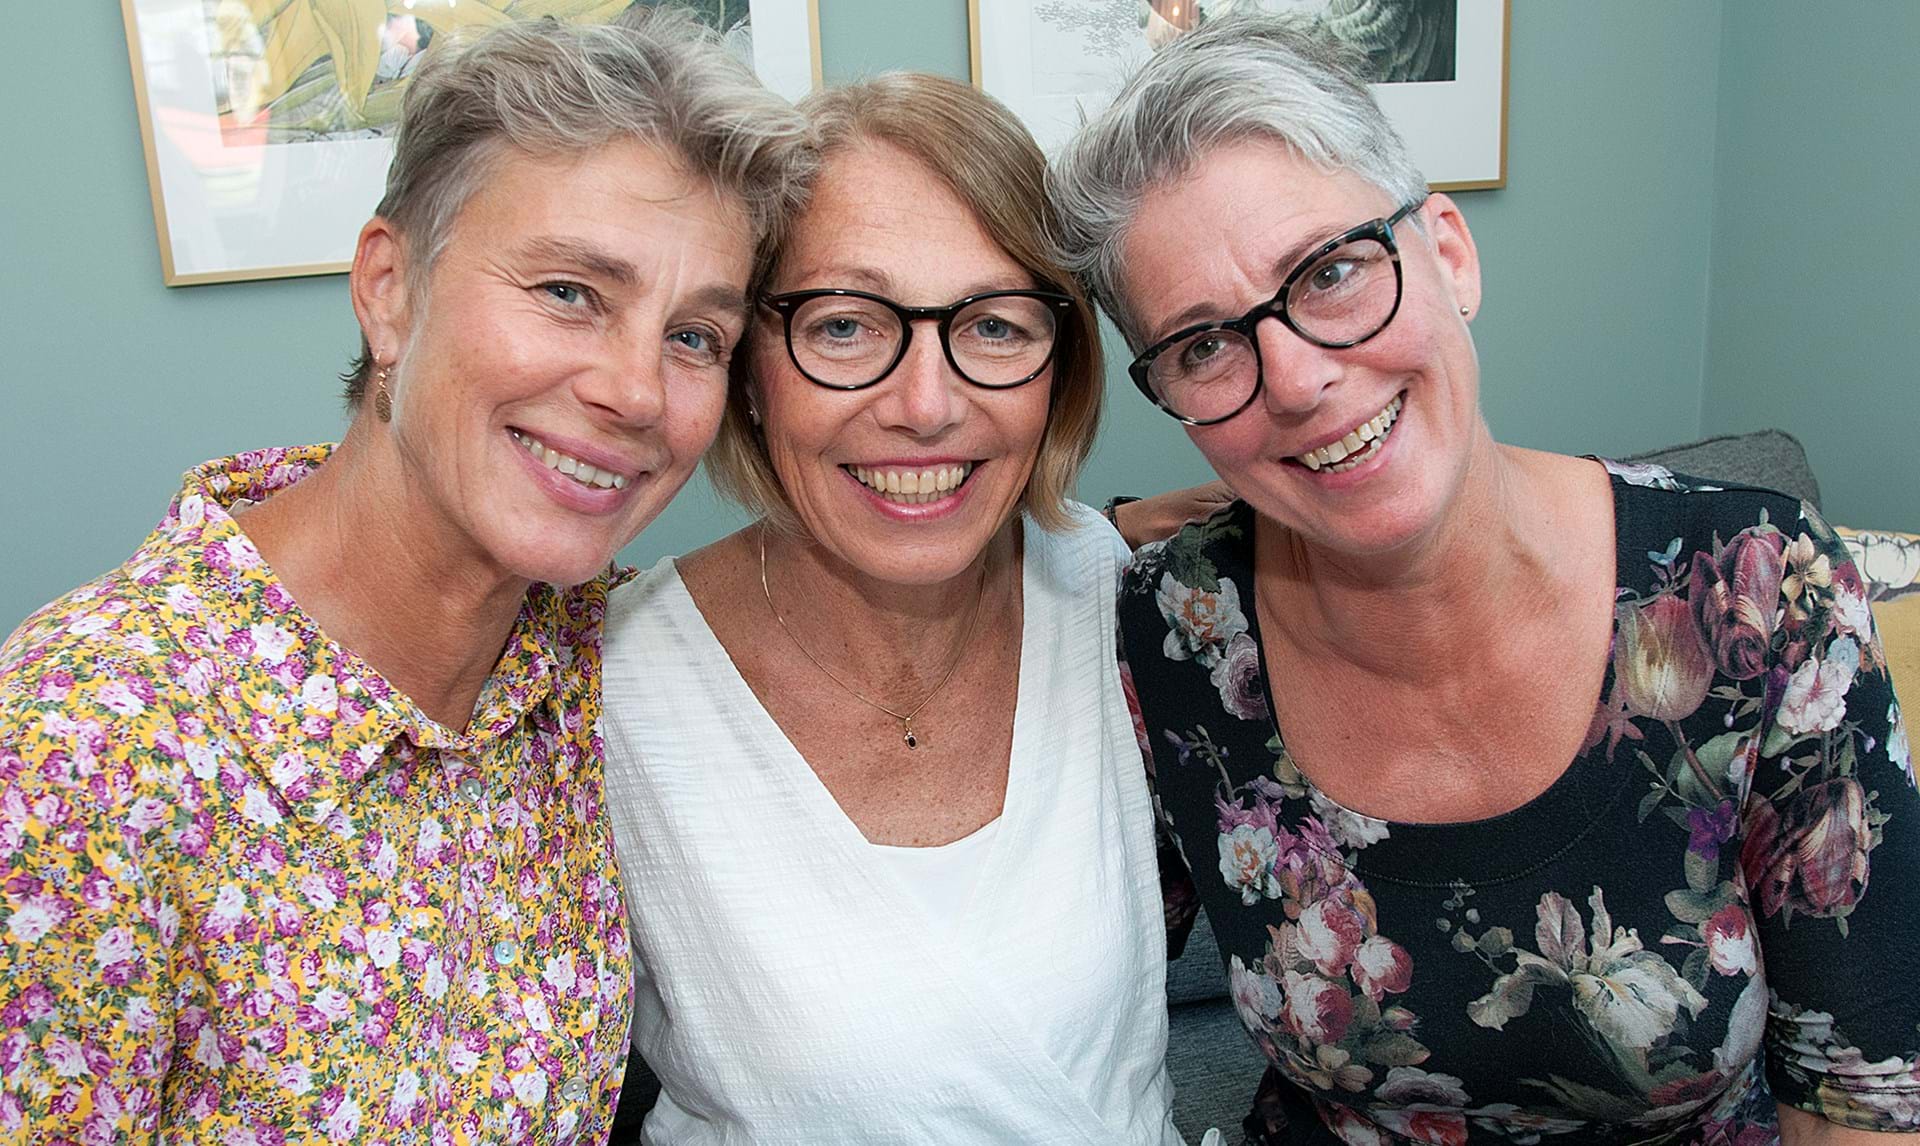 Macadam auditorium flugt Tre søstre blev gift på samme dag for 41 år siden - ALT.dk